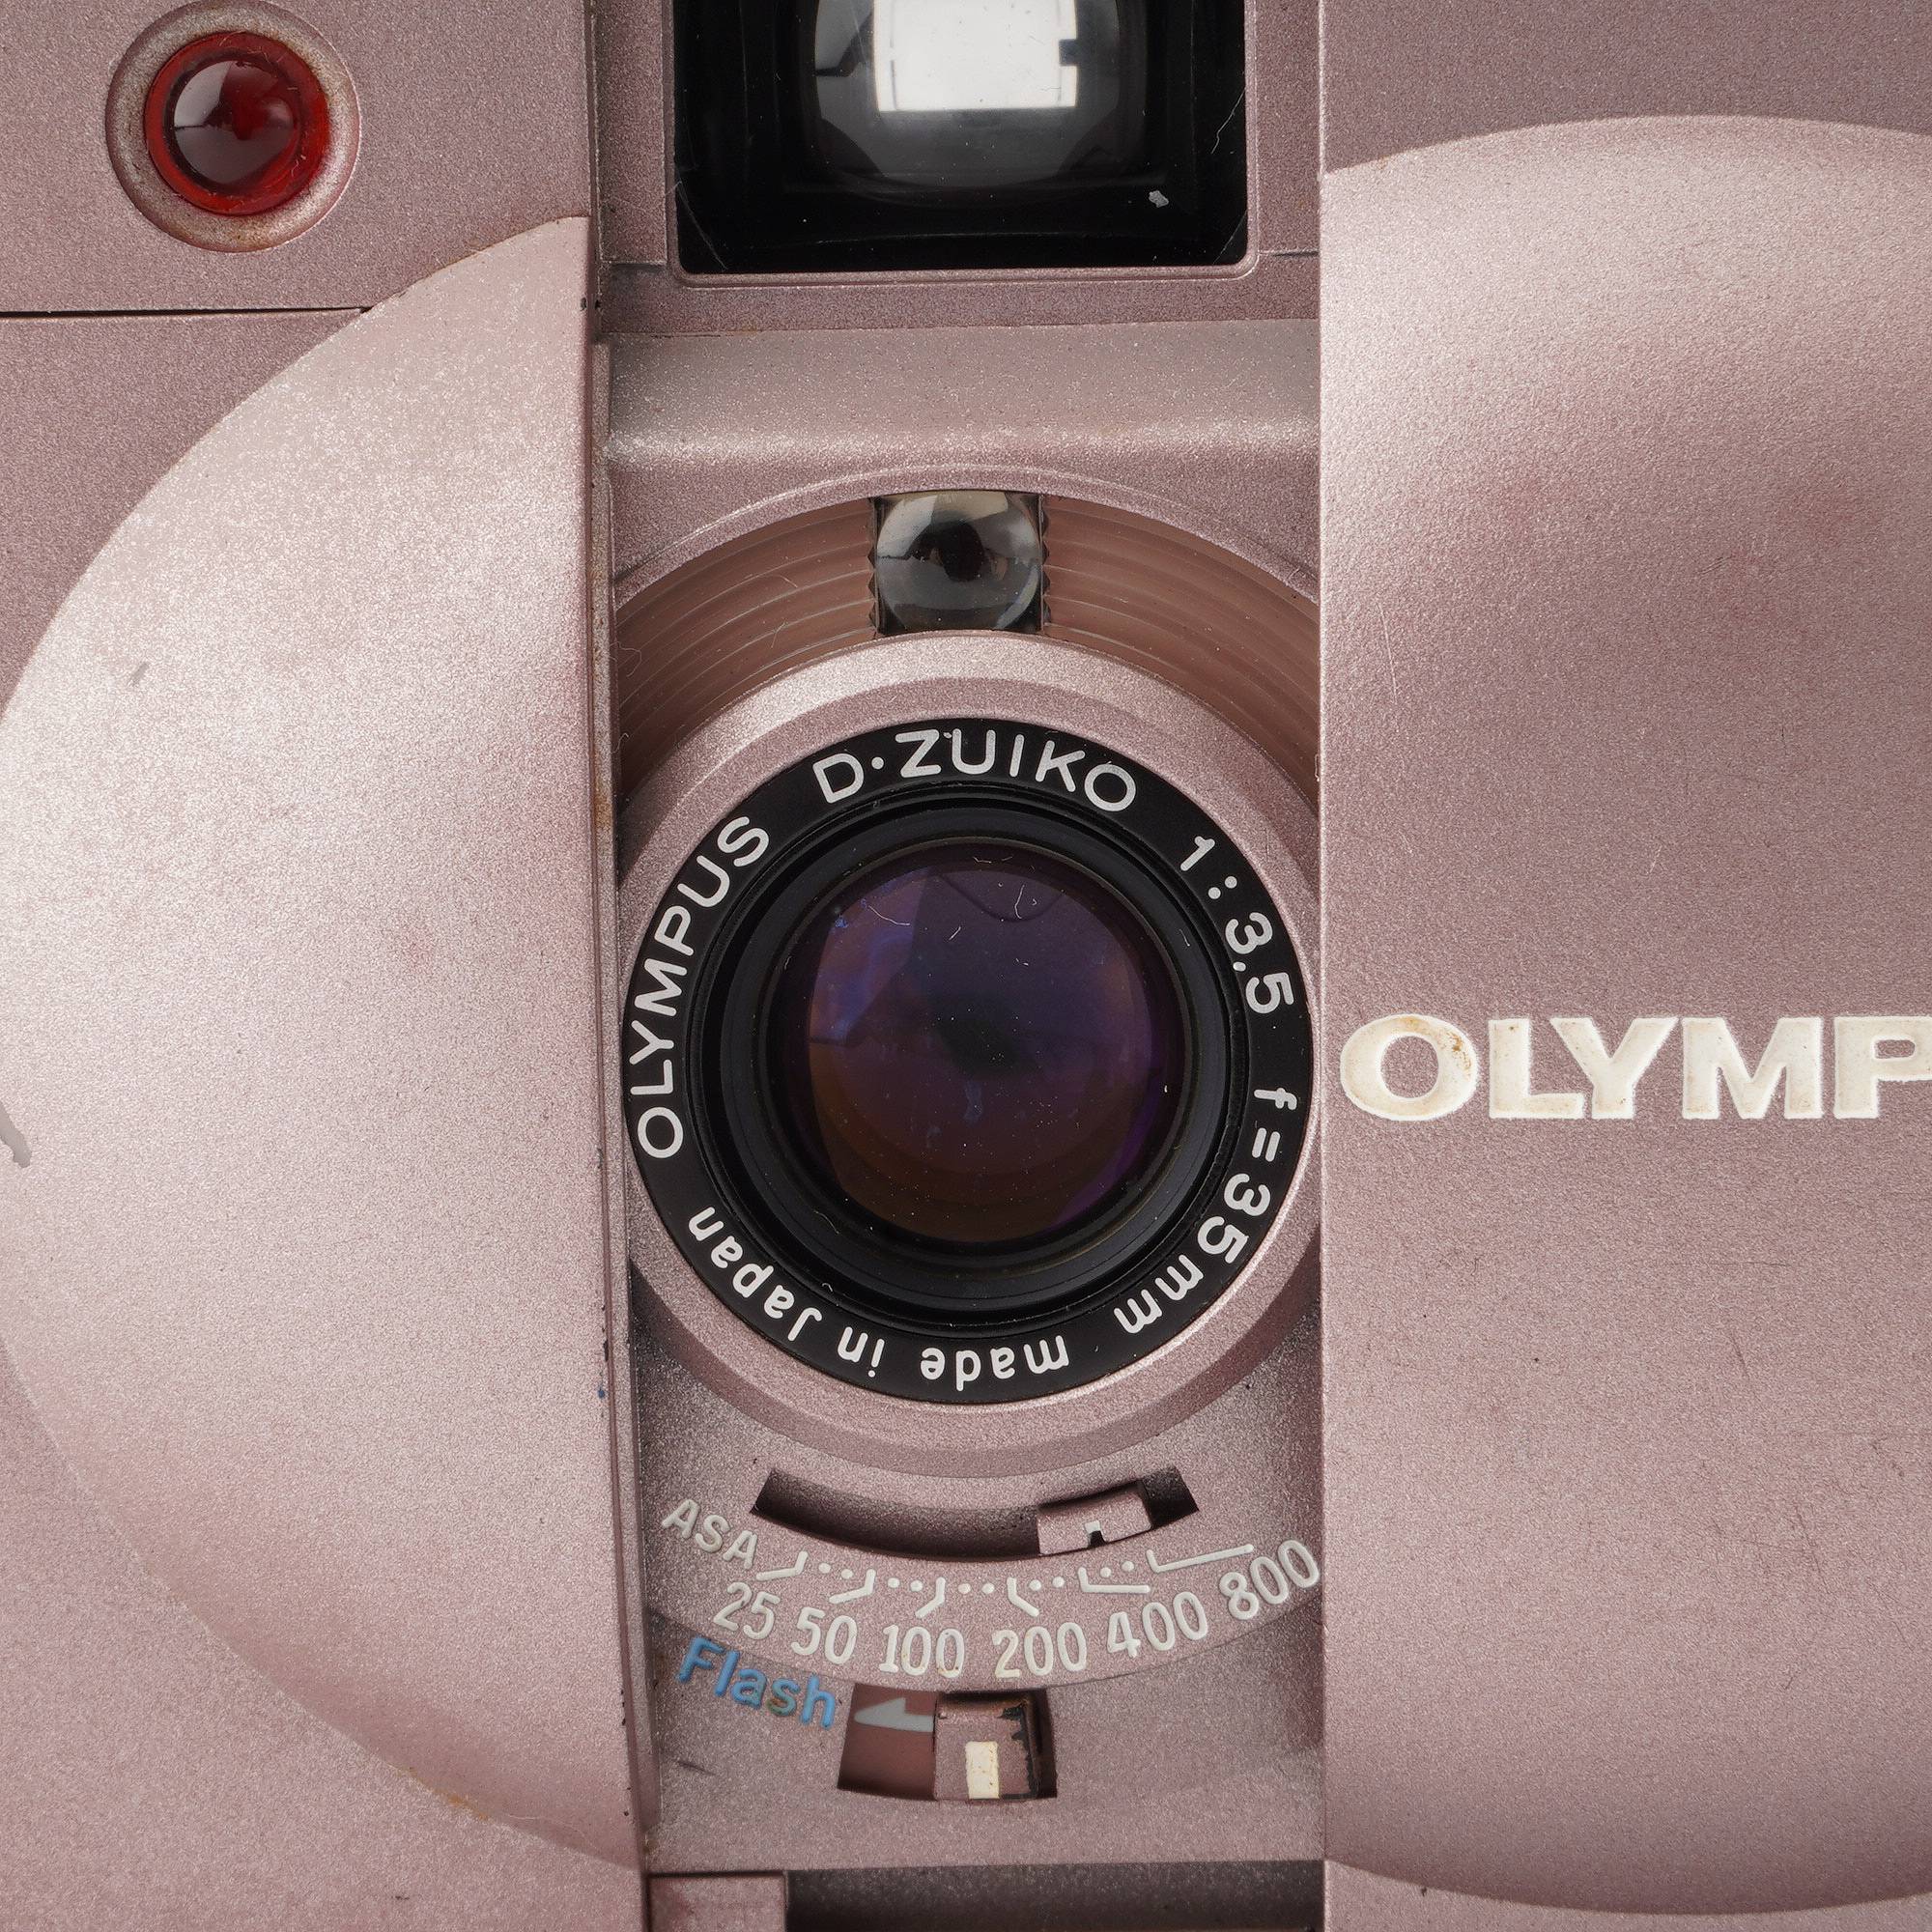 オリンパス Olympus XA2 ピンク / D ZUIKO 35mm F3.5 / Electronic Flash A11